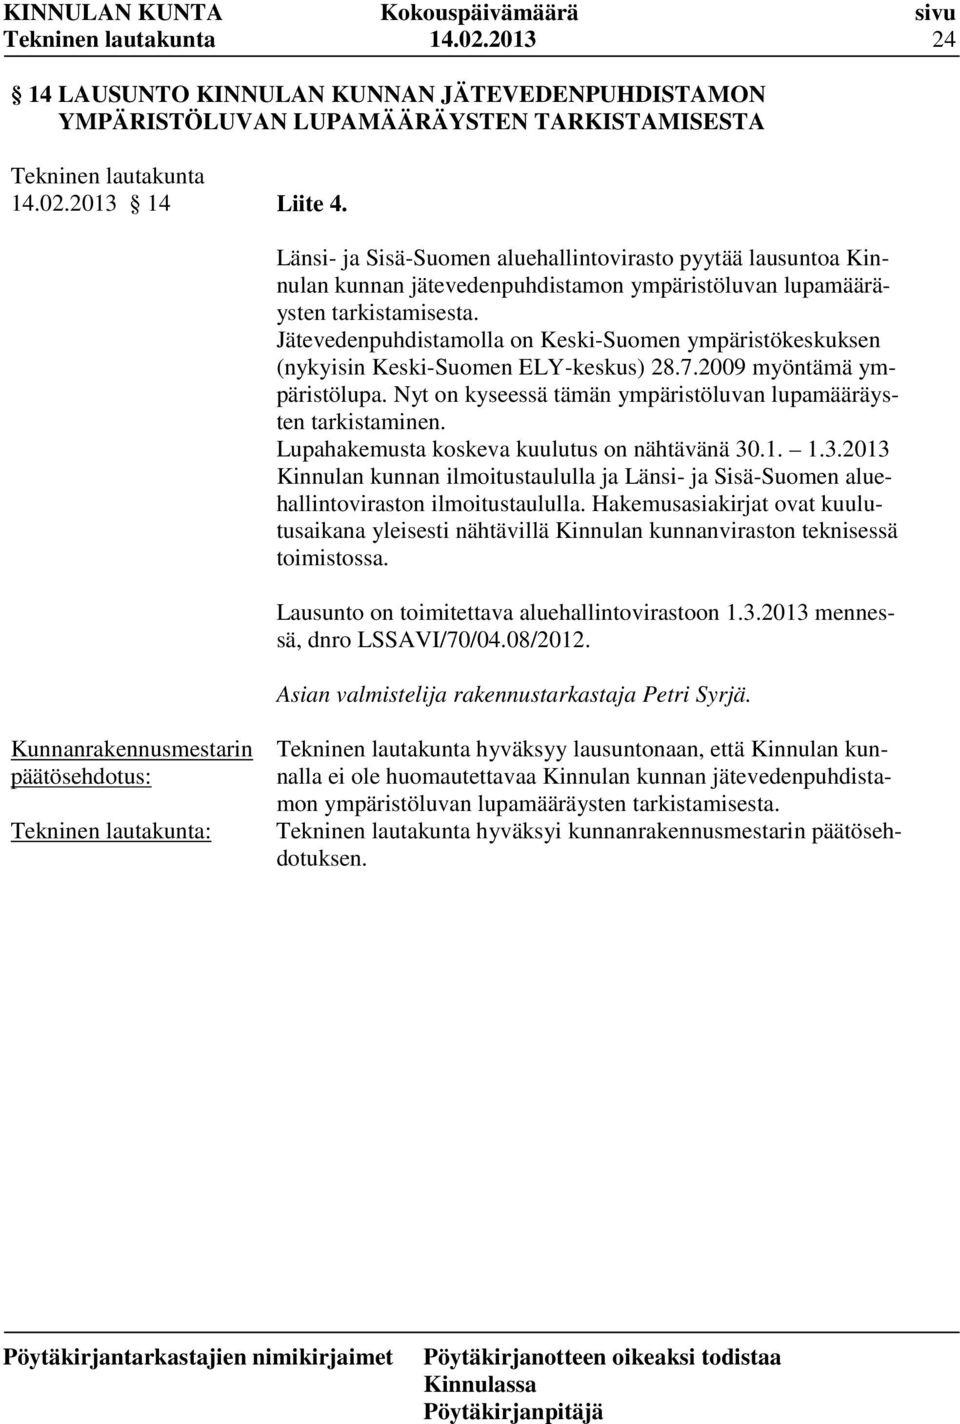 Jätevedenpuhdistamolla on Keski-Suomen ympäristökeskuksen (nykyisin Keski-Suomen ELY-keskus) 28.7.2009 myöntämä ympäristölupa. Nyt on kyseessä tämän ympäristöluvan lupamääräysten tarkistaminen.